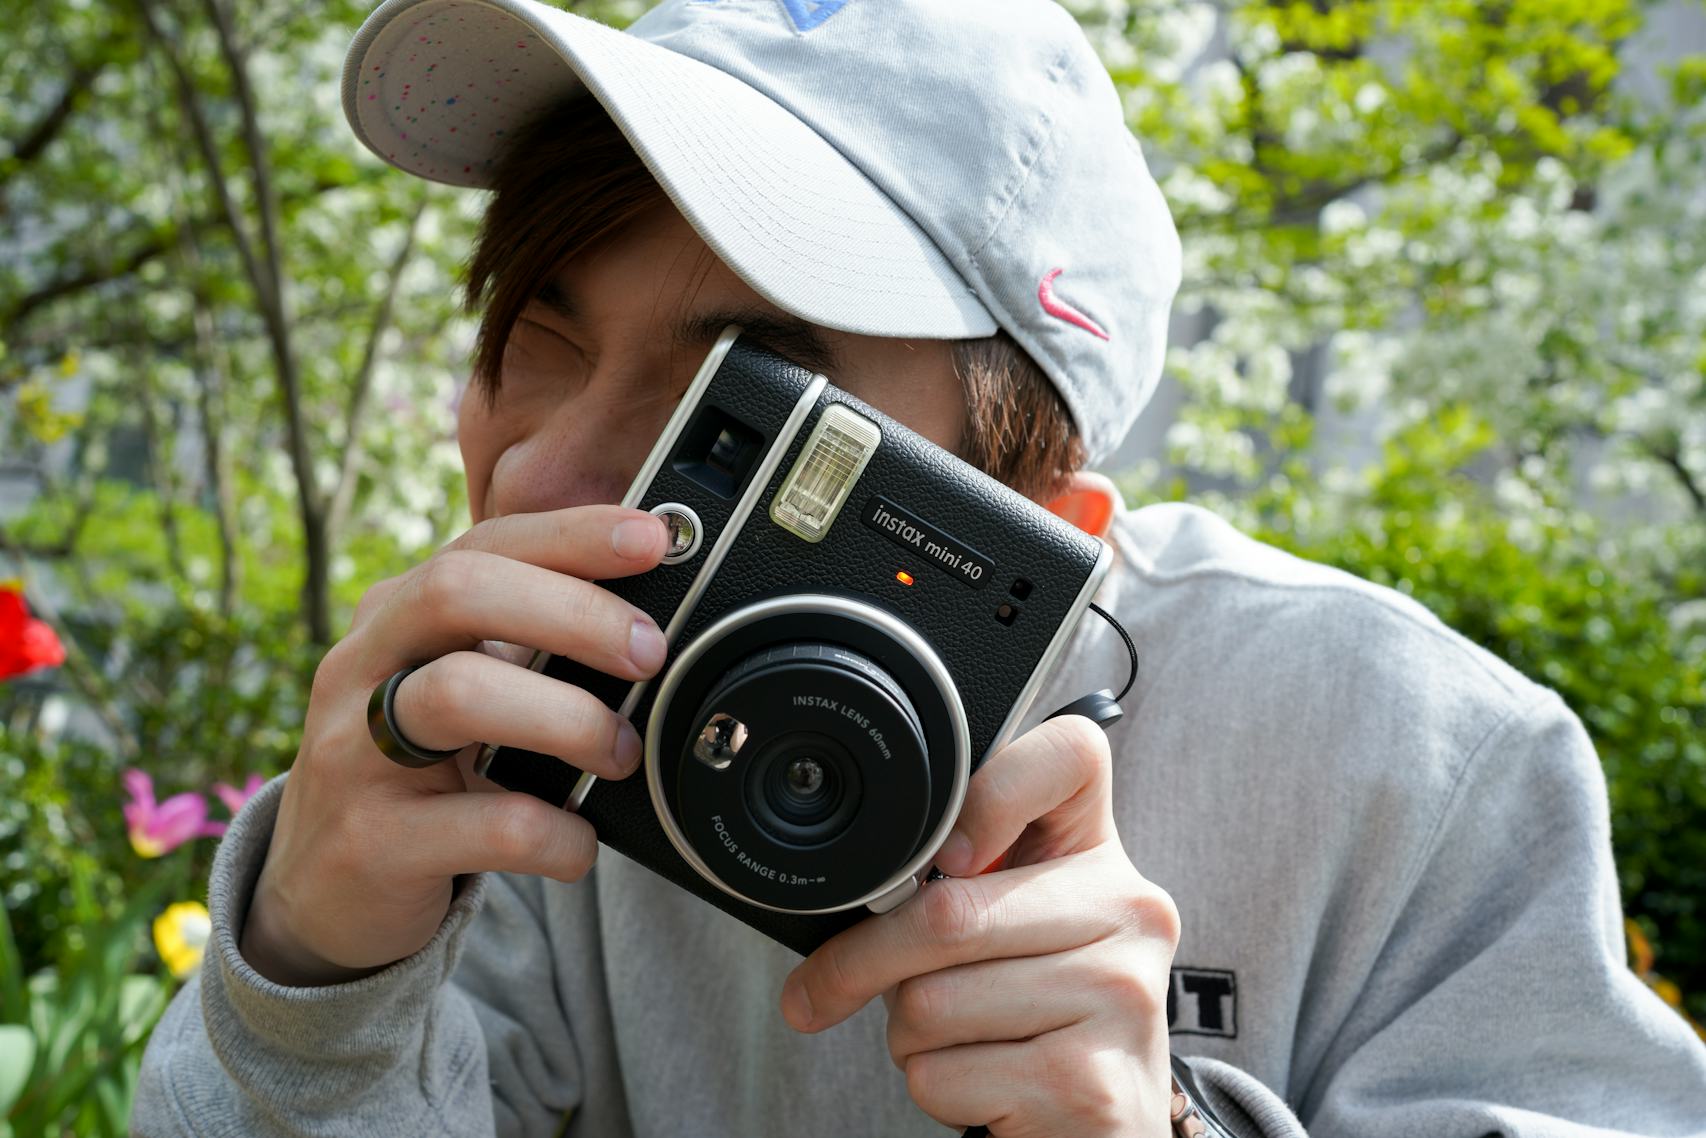 Fujifilm Instax Mini 90 Neo Classic Camera Review